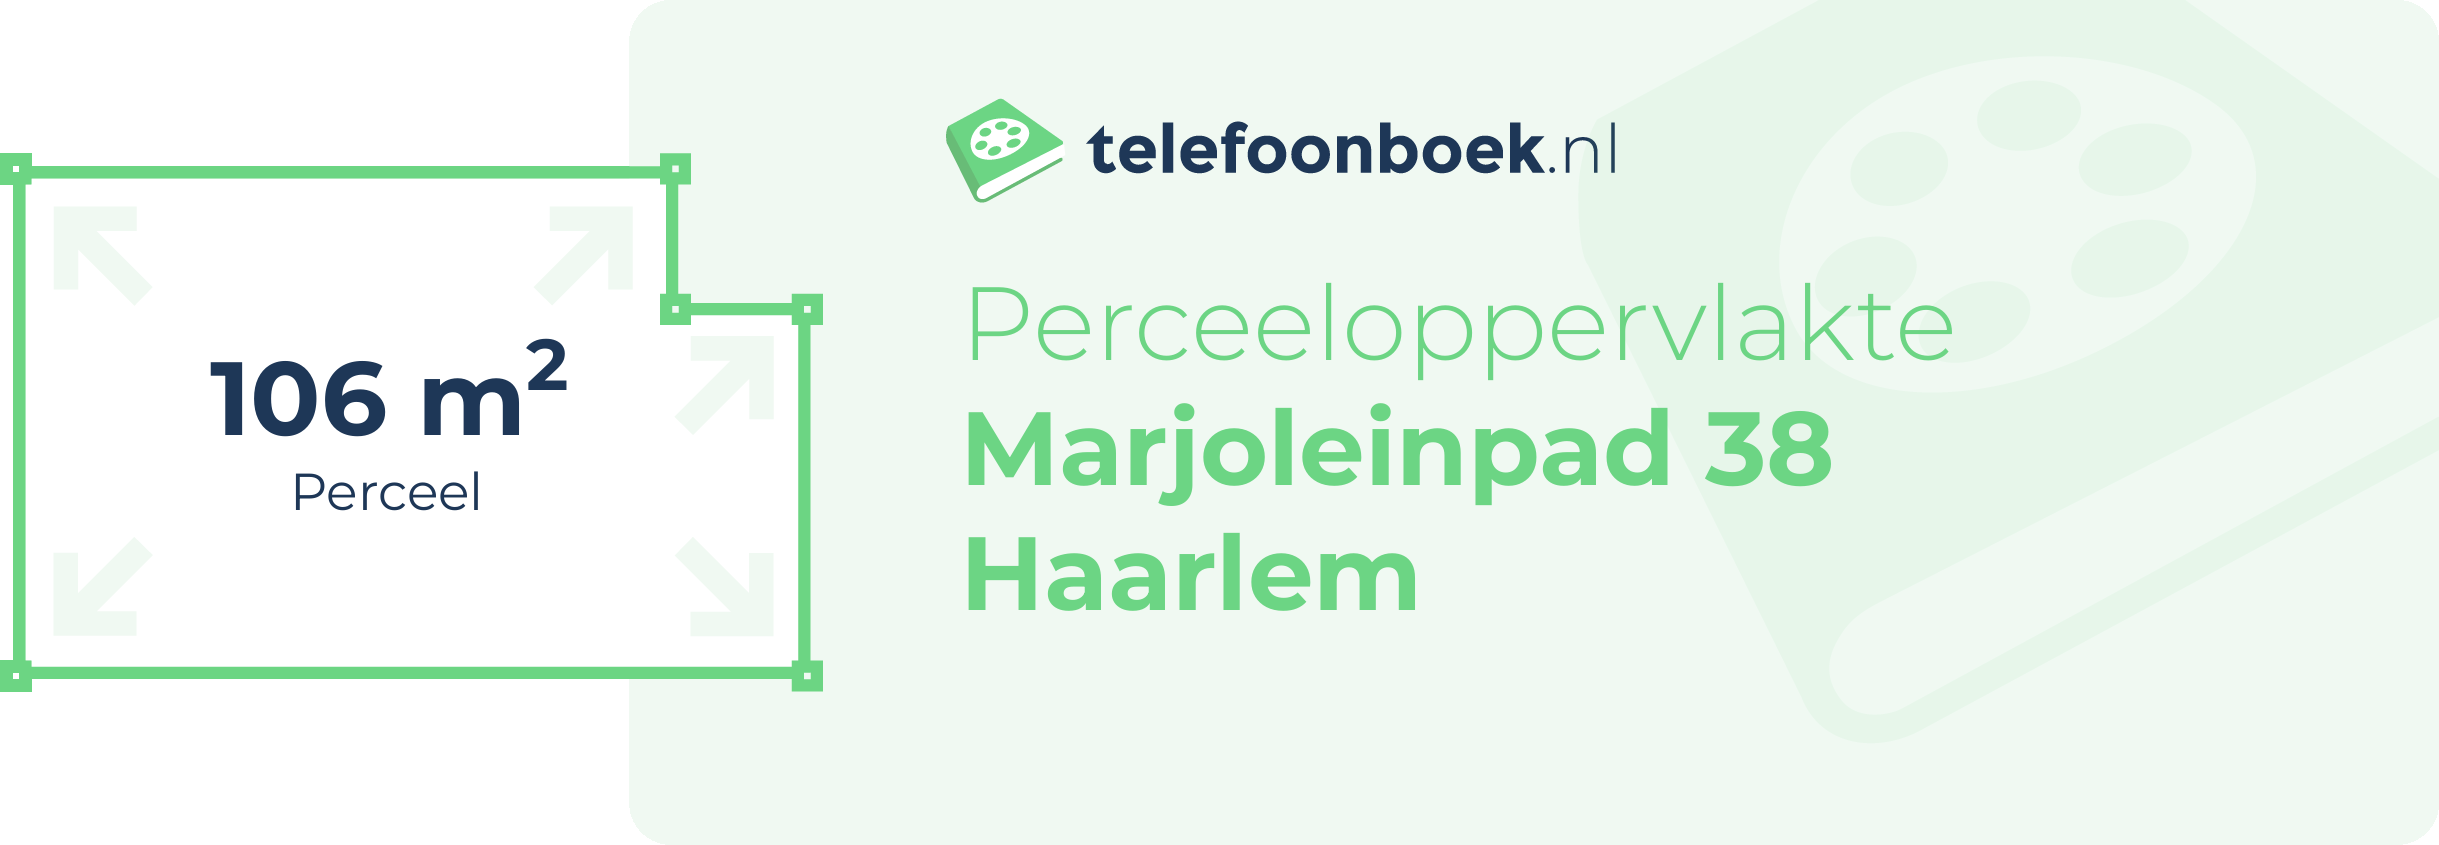 Perceeloppervlakte Marjoleinpad 38 Haarlem